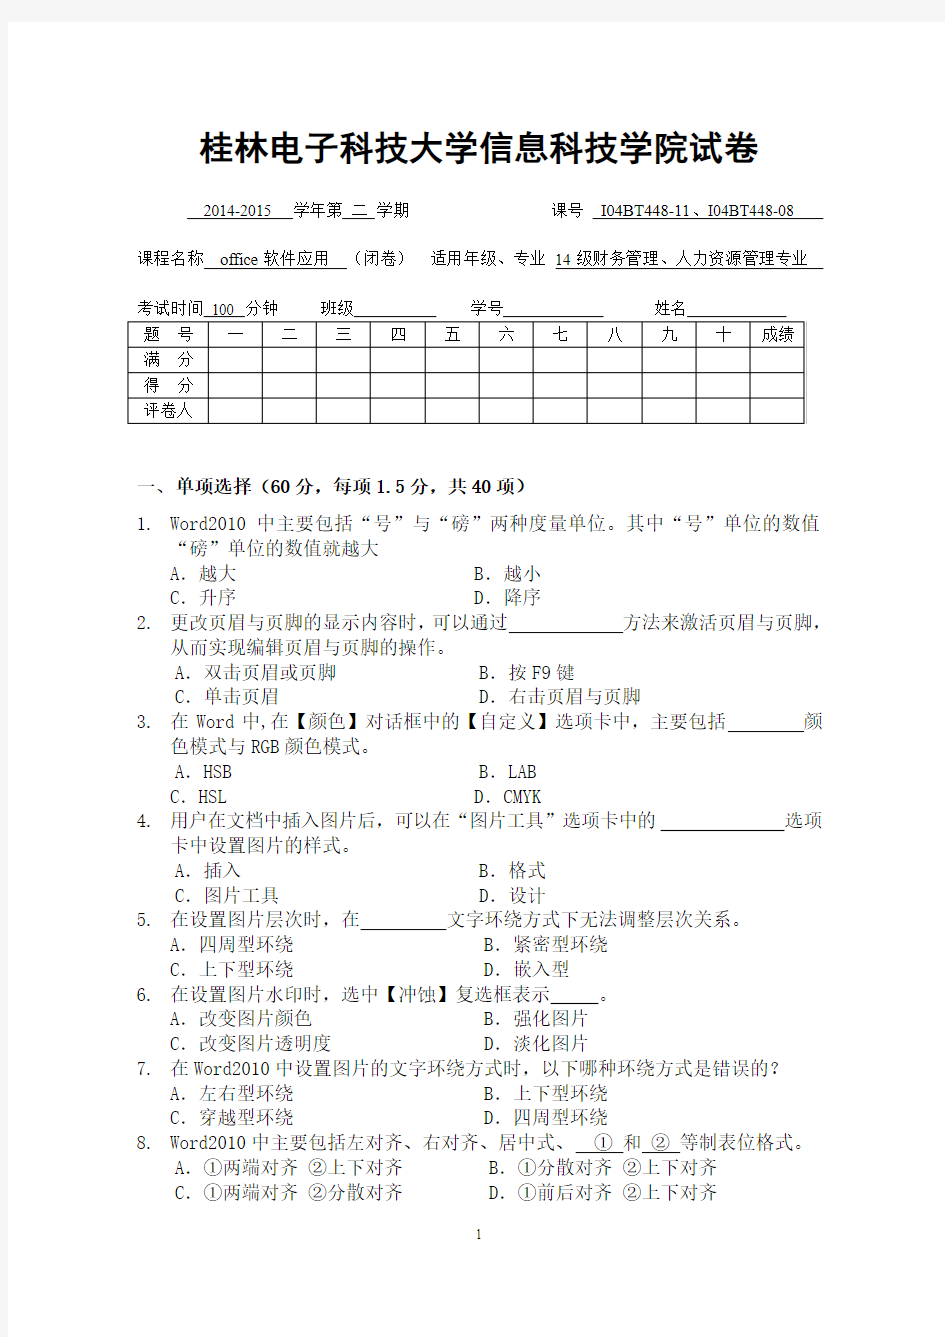 桂林电子科技大学2015.office高级操作笔试题目(15.6.29)